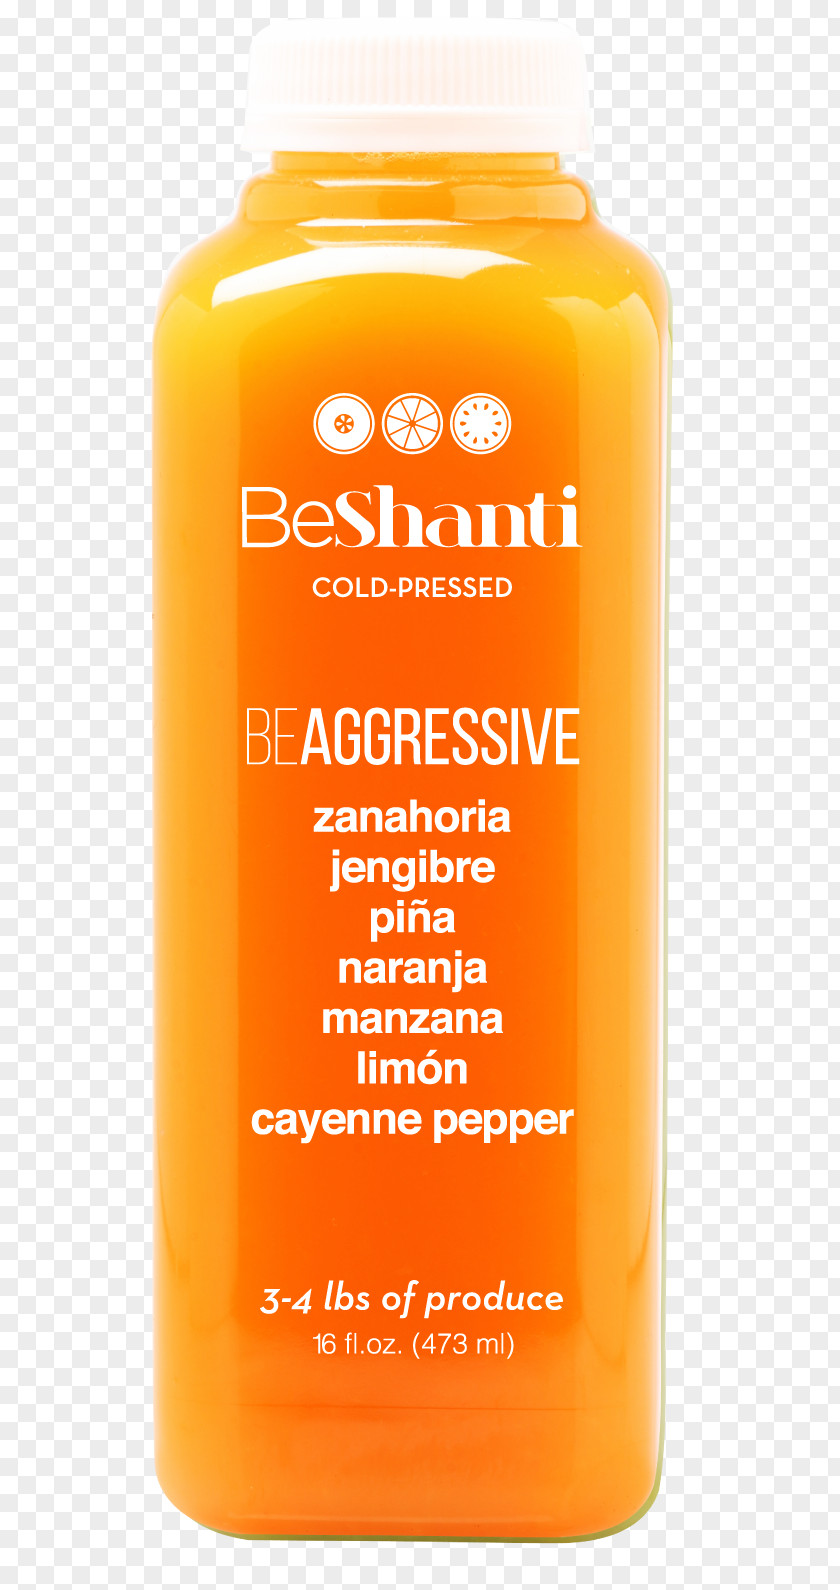 Juice Orange Drink BeShanti Cold-pressed PNG